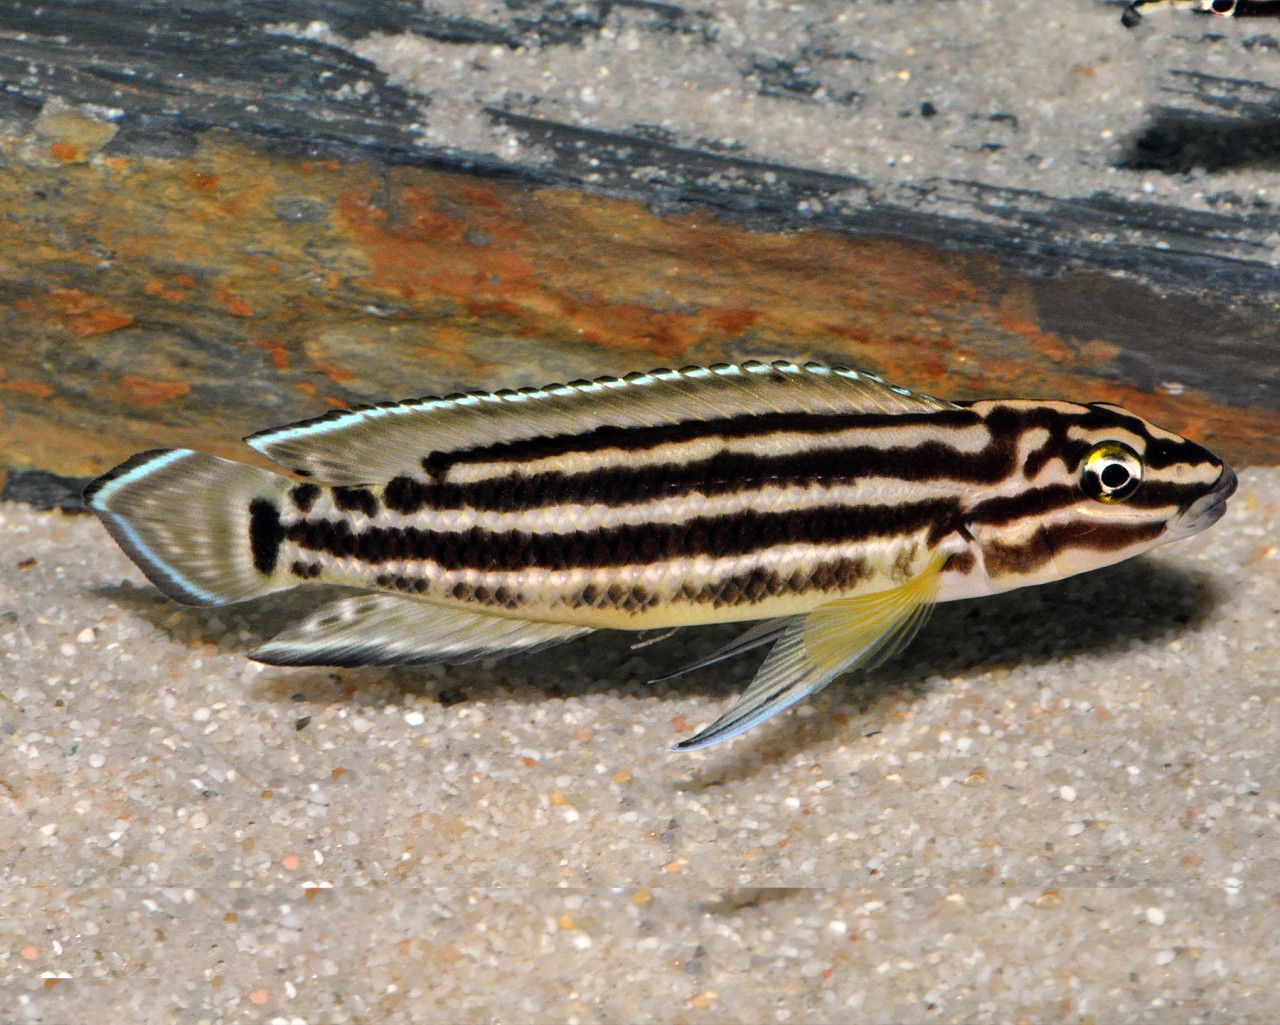 Vierstreifen-Schlankcichlide - Julidochromis regani